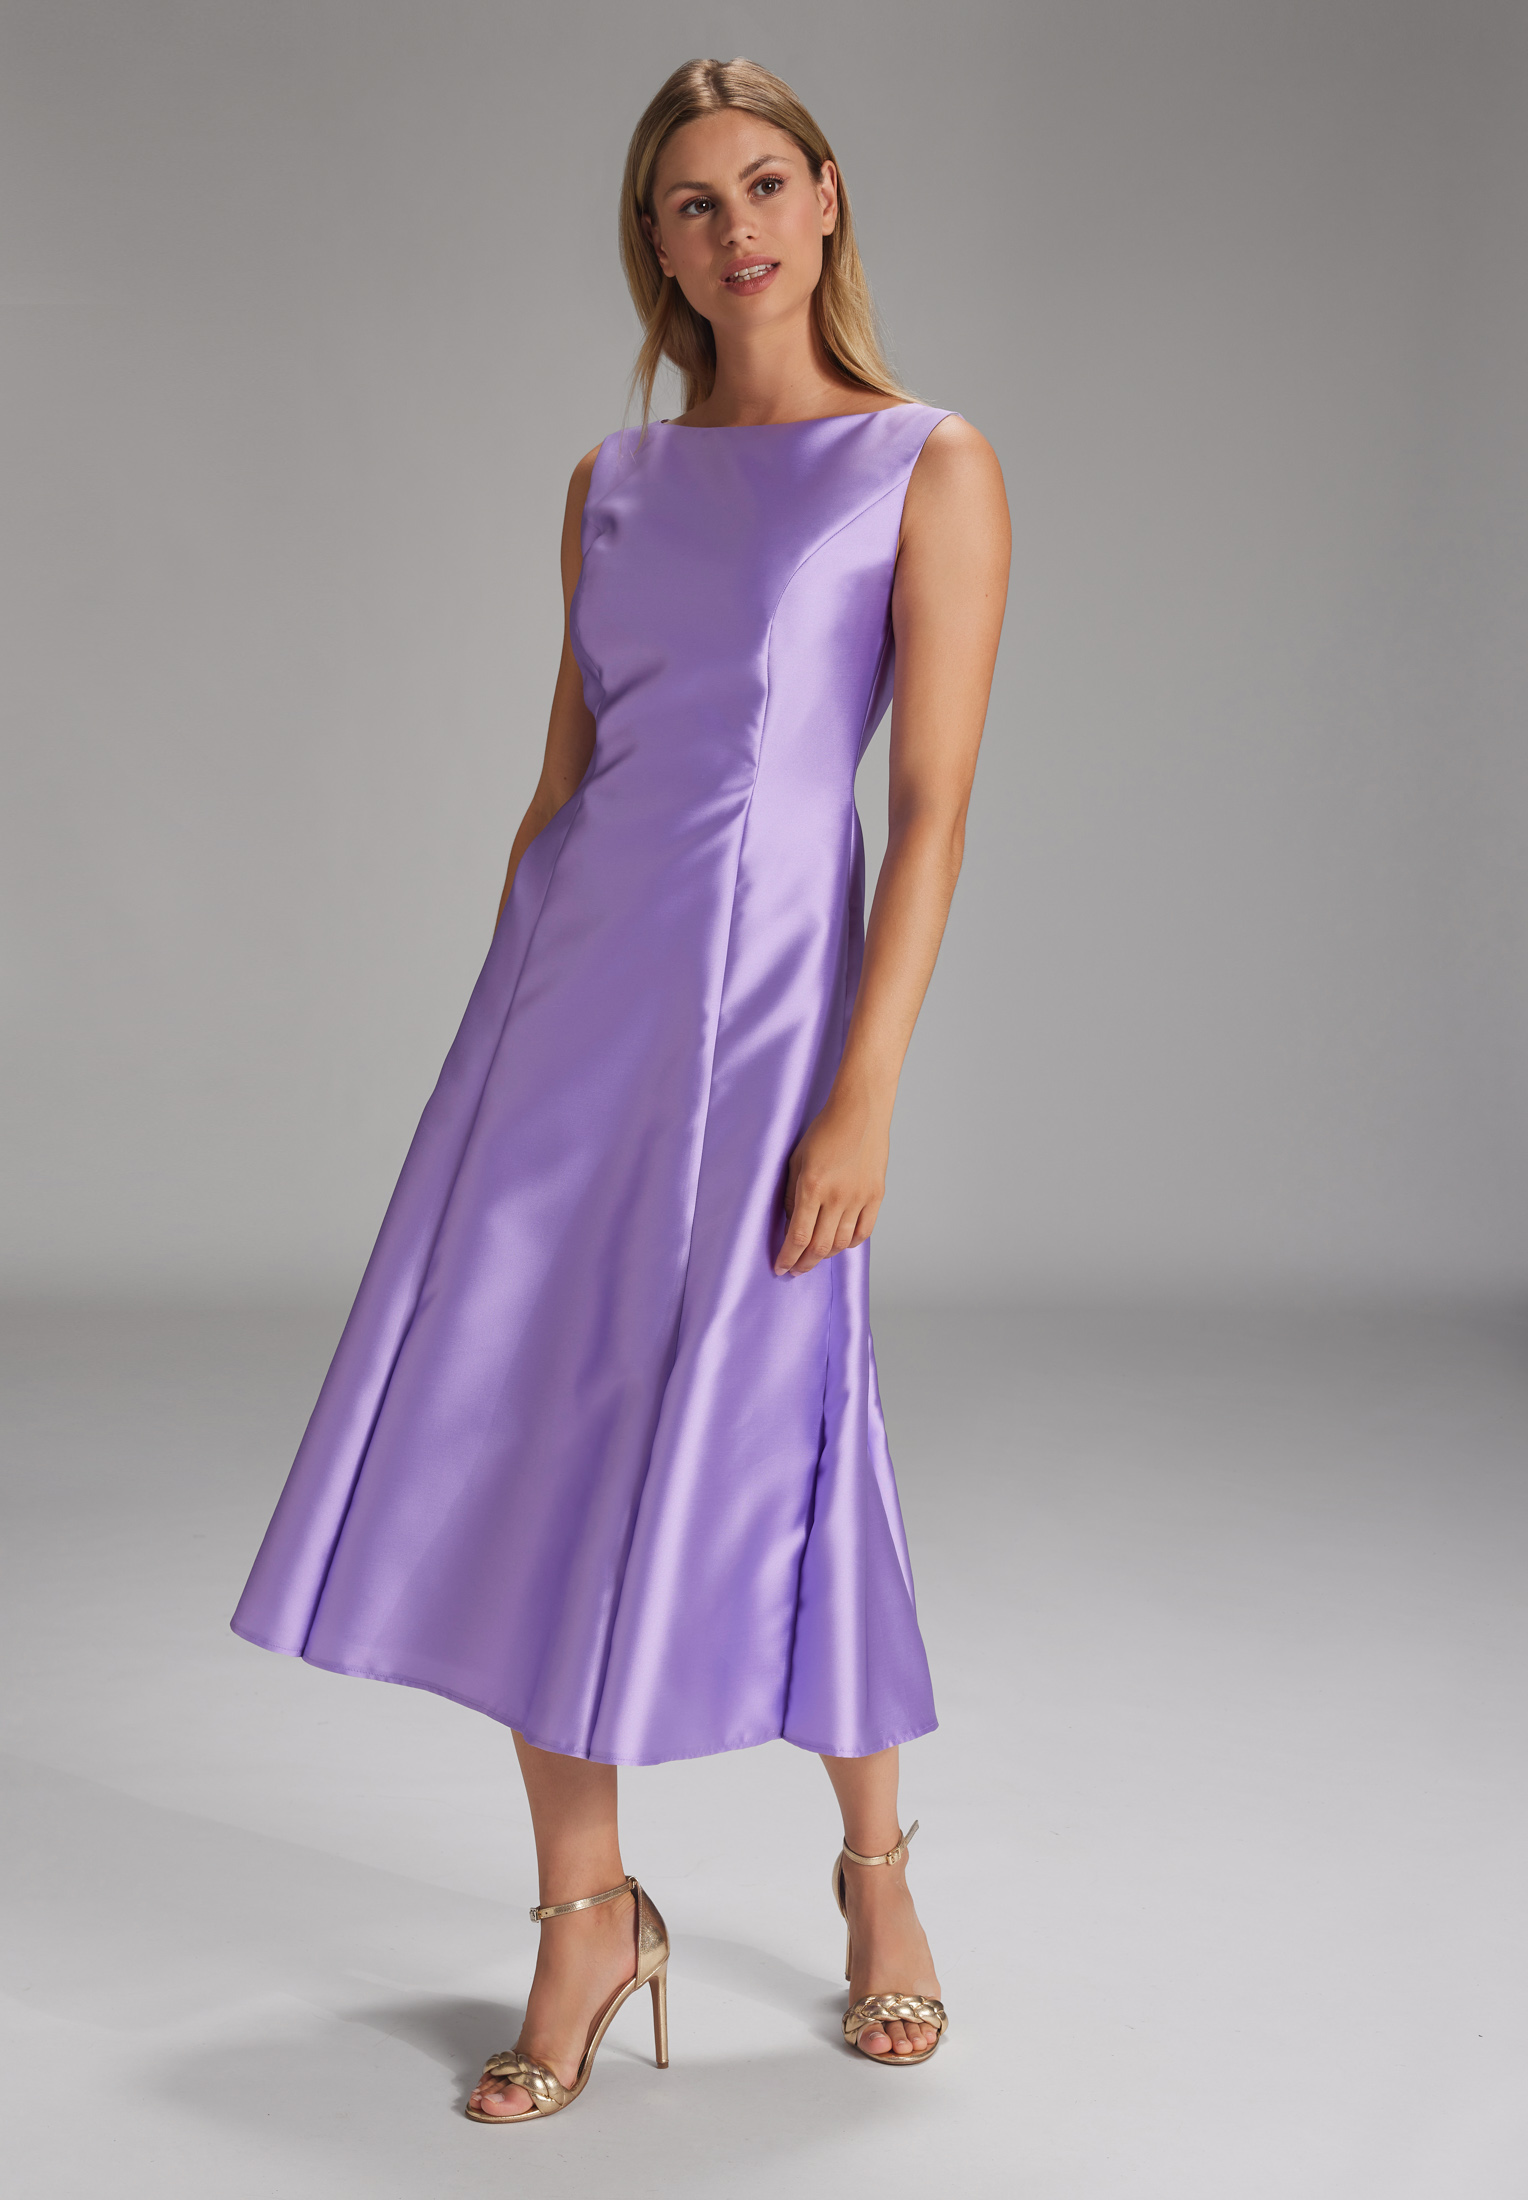 Swing Midi Dress fashion lilac 2